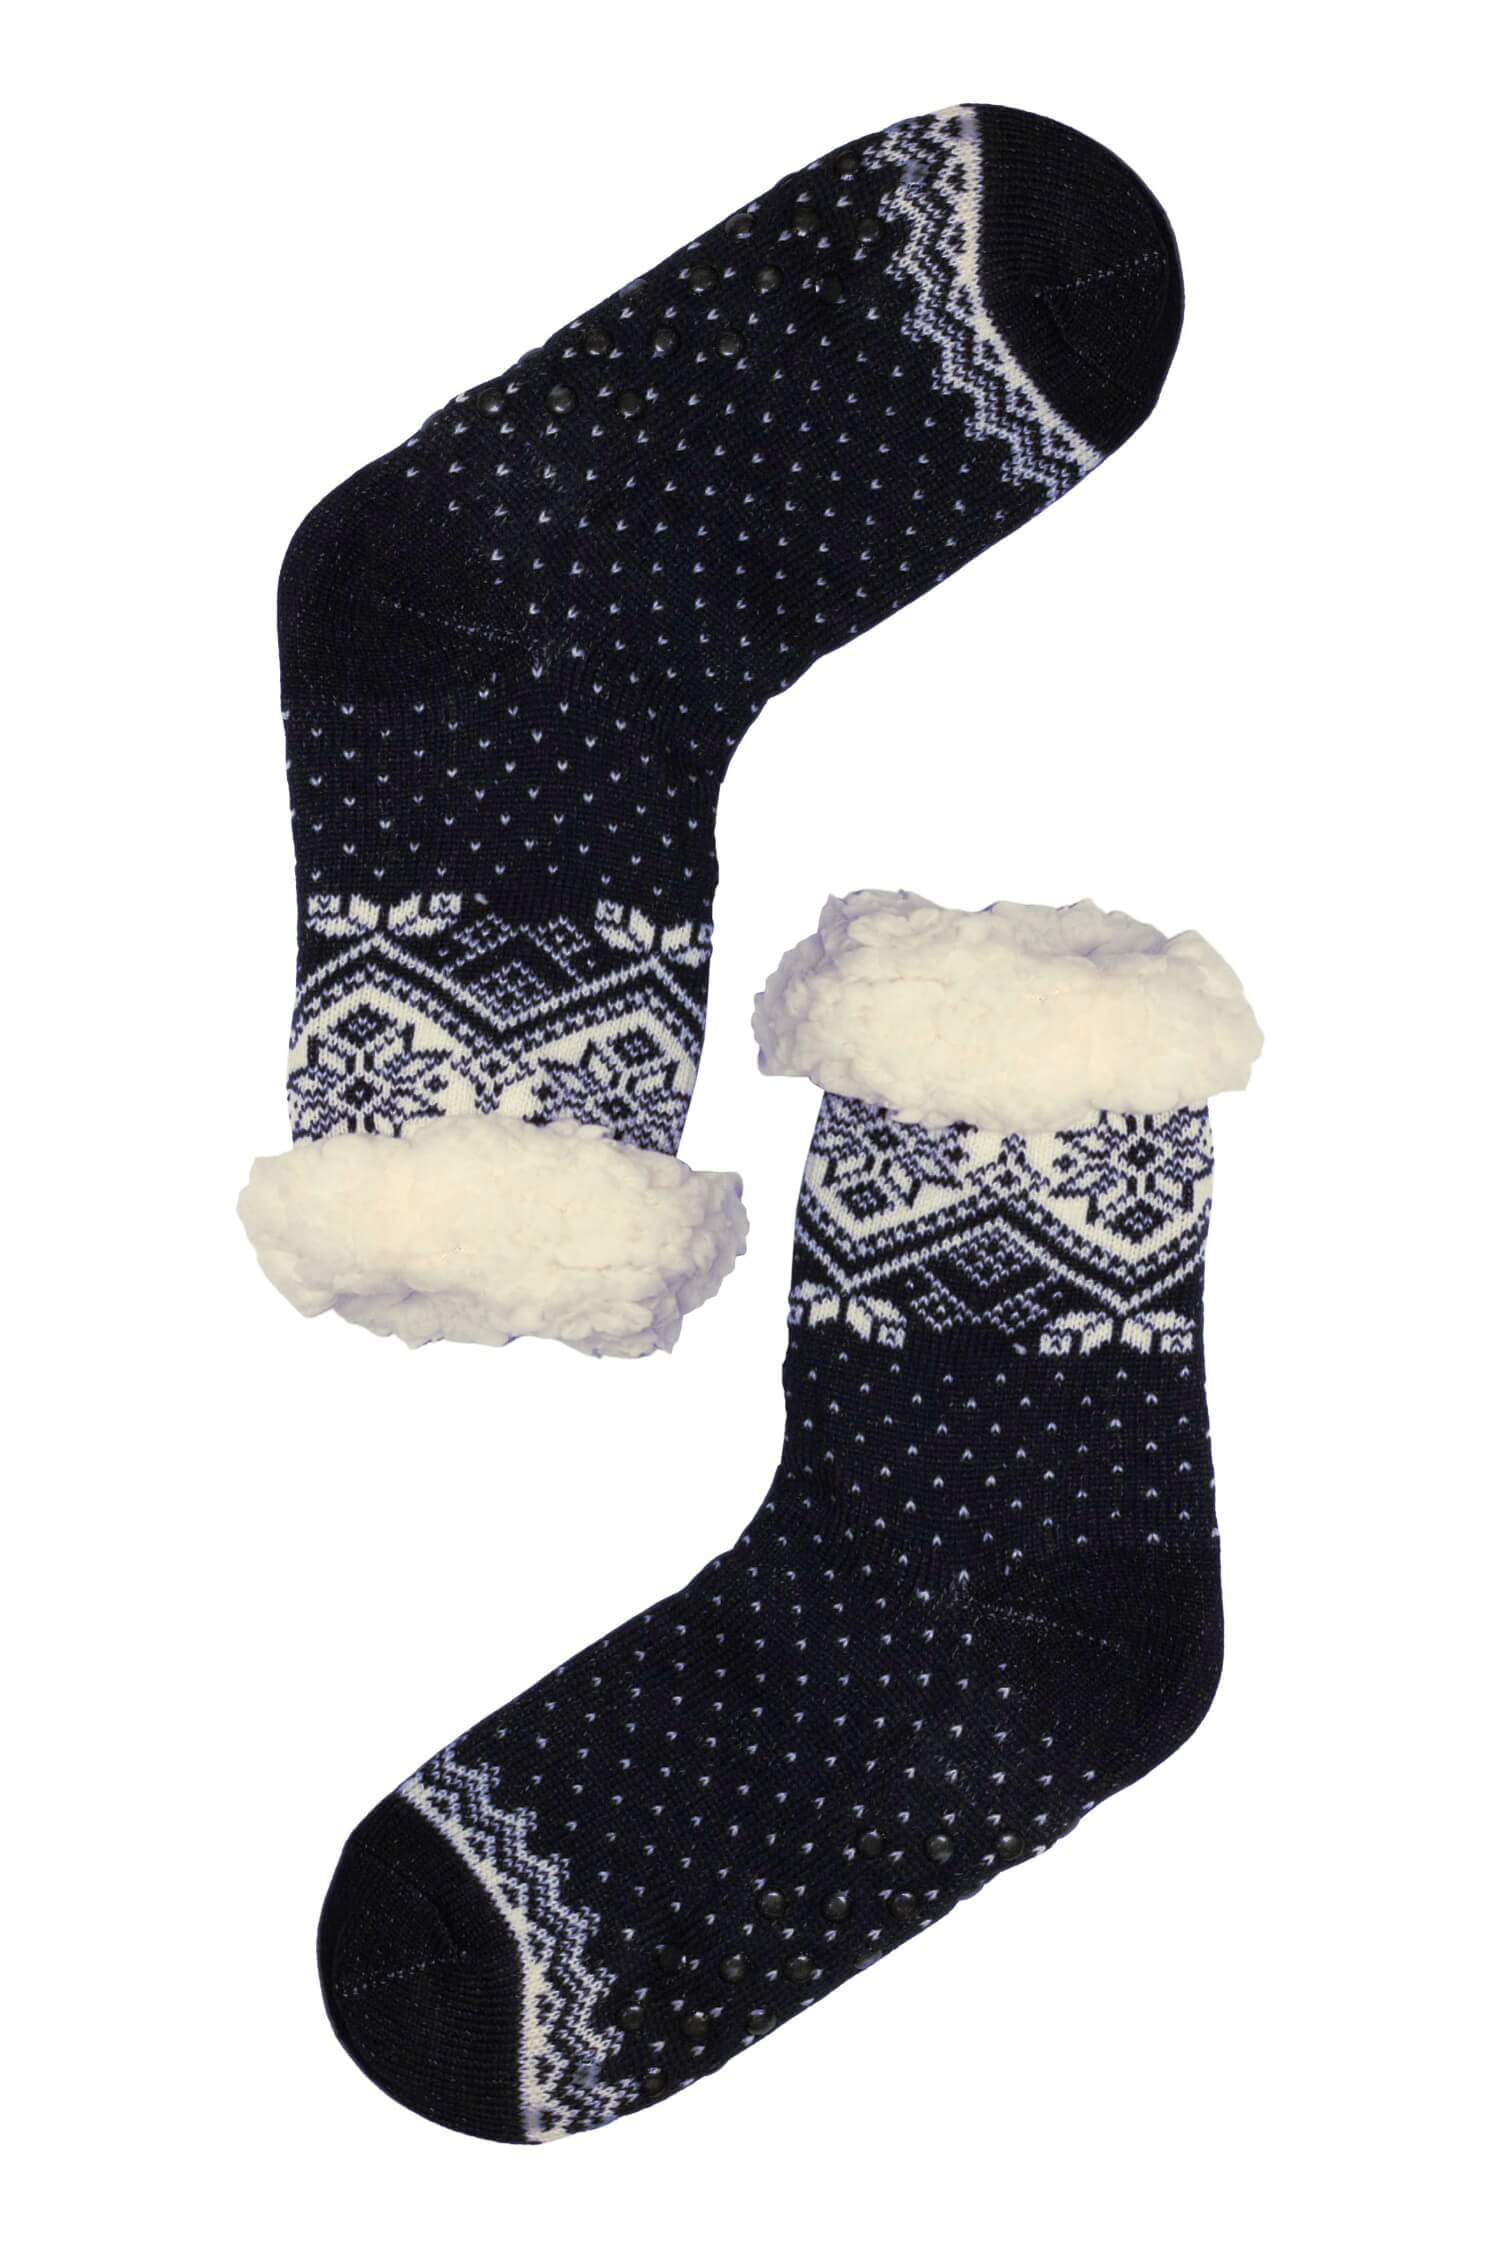 Lamb tmavomodré hřejivé ponožky s beránkem 2138 37-39 tmavě modrá